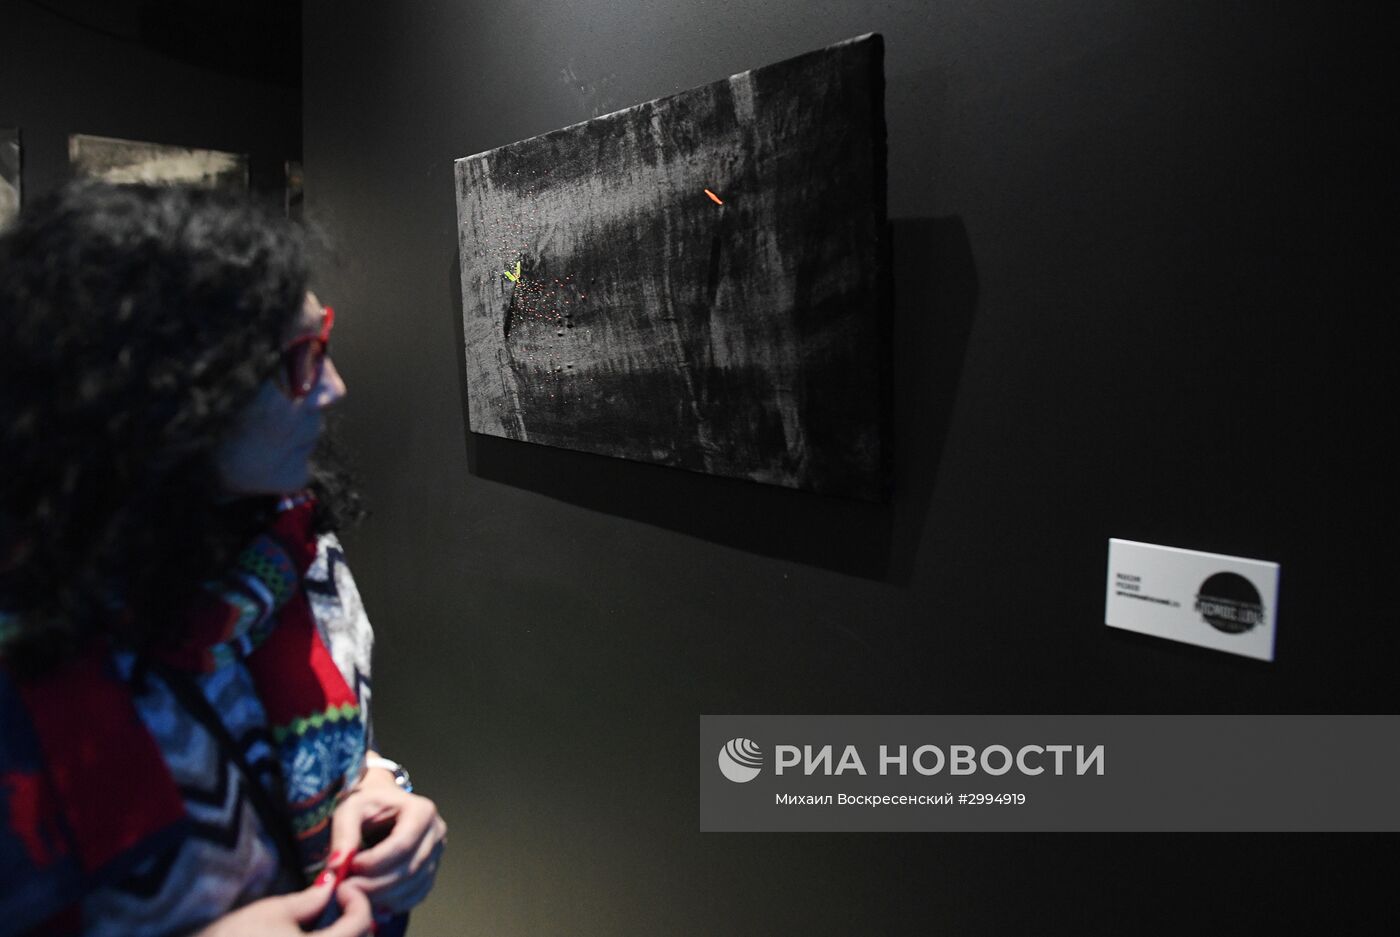 Открытие мультимедийной выставки "Космос. Love" в Москве